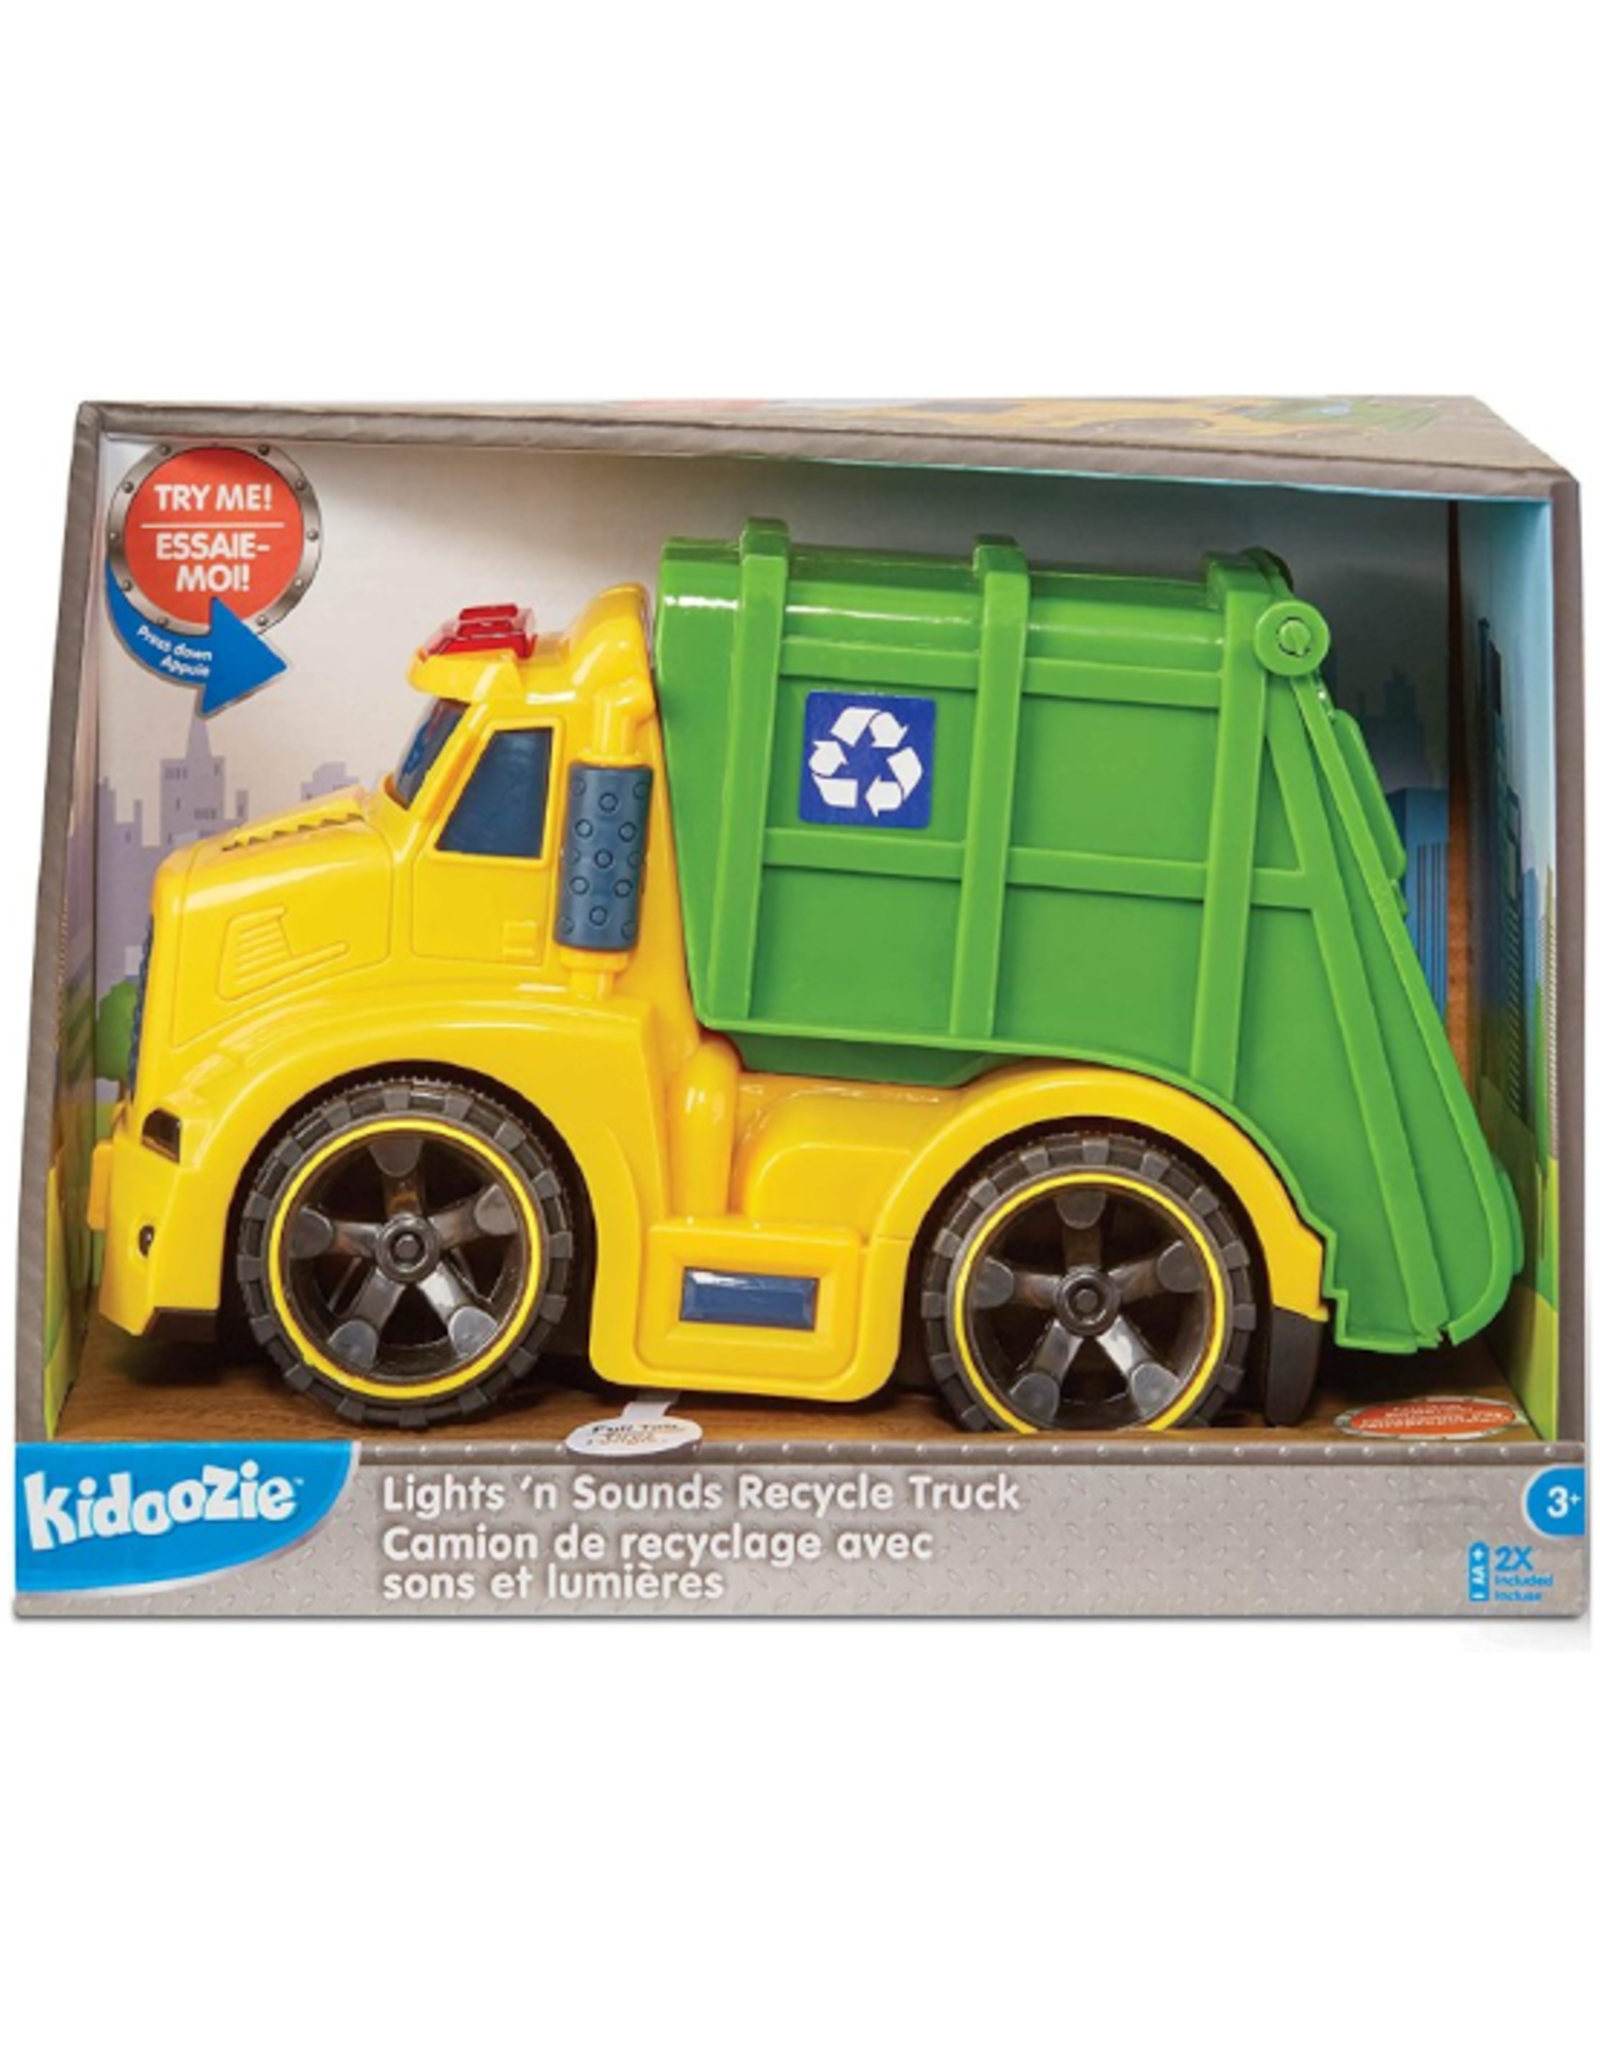 Kidoozie Kidoozie - Lights n Sounds Recycle Truck